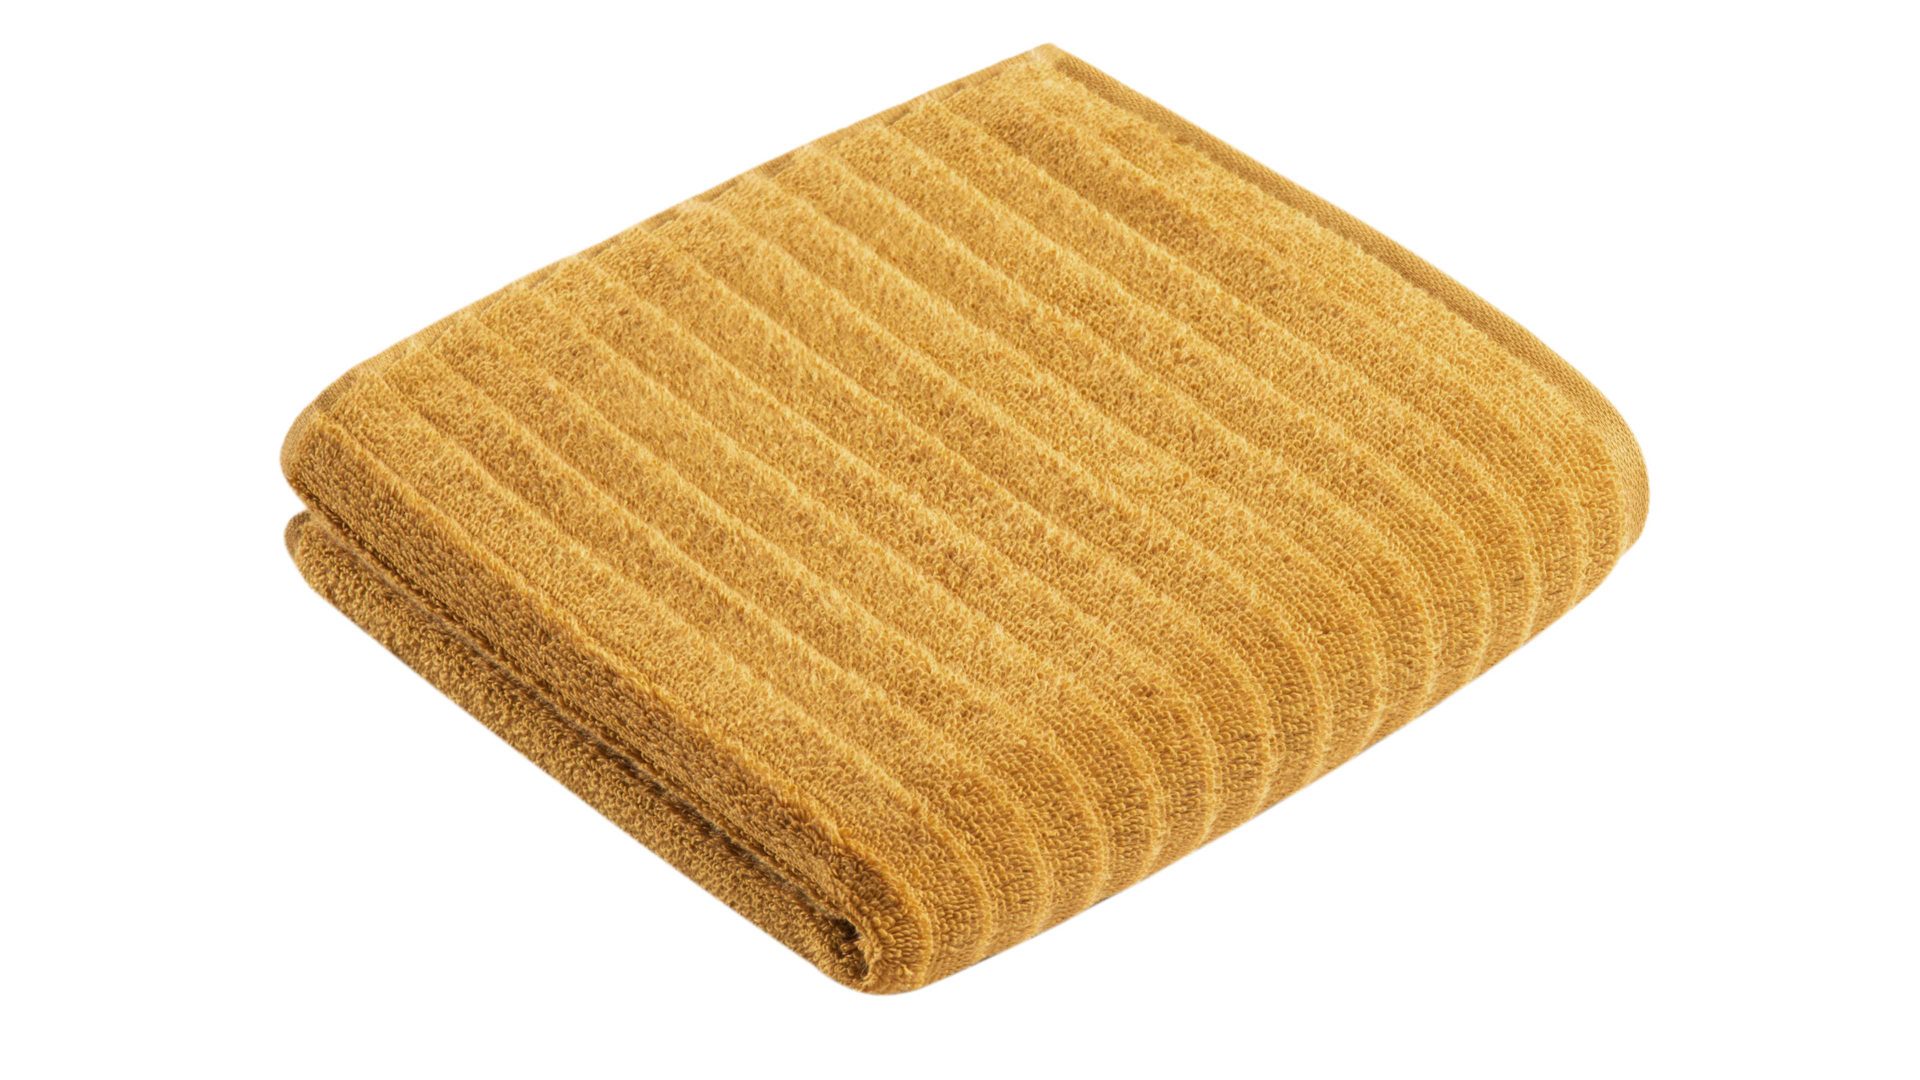 Handtuch Vossen aus Naturfaser in Gelb VOSSEN® Frottee-Serie Mystic - Handtuch gingkofarbene Baumwolle - ca. 60 x 110 cm